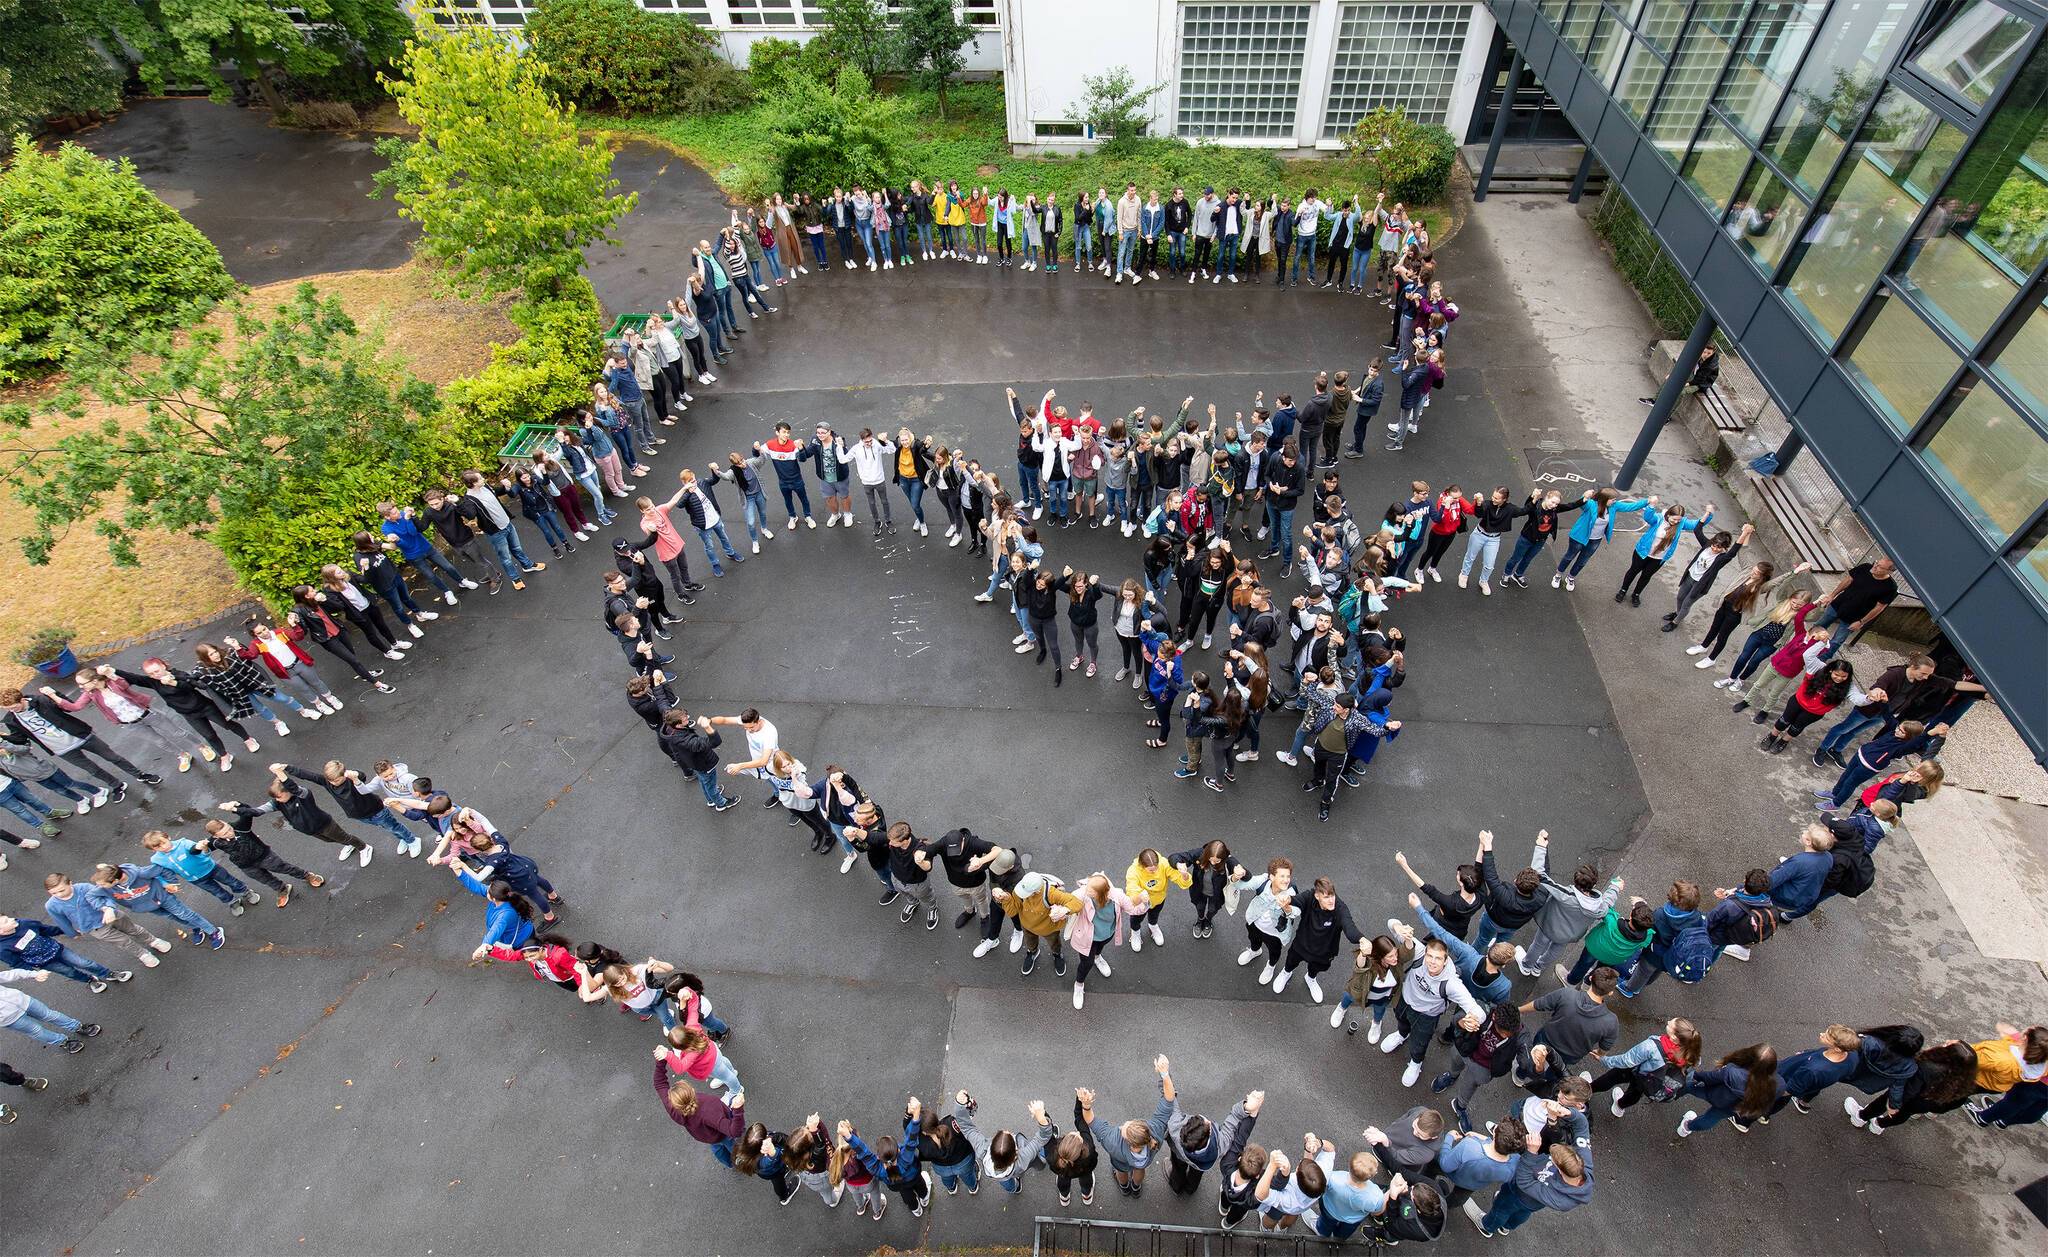  Sich an den Händen halten bilden die Schüler des Gymnasiums Bayreuther Straße eine Menschenkette gegen Abschiebung von Flüchtlingen.  